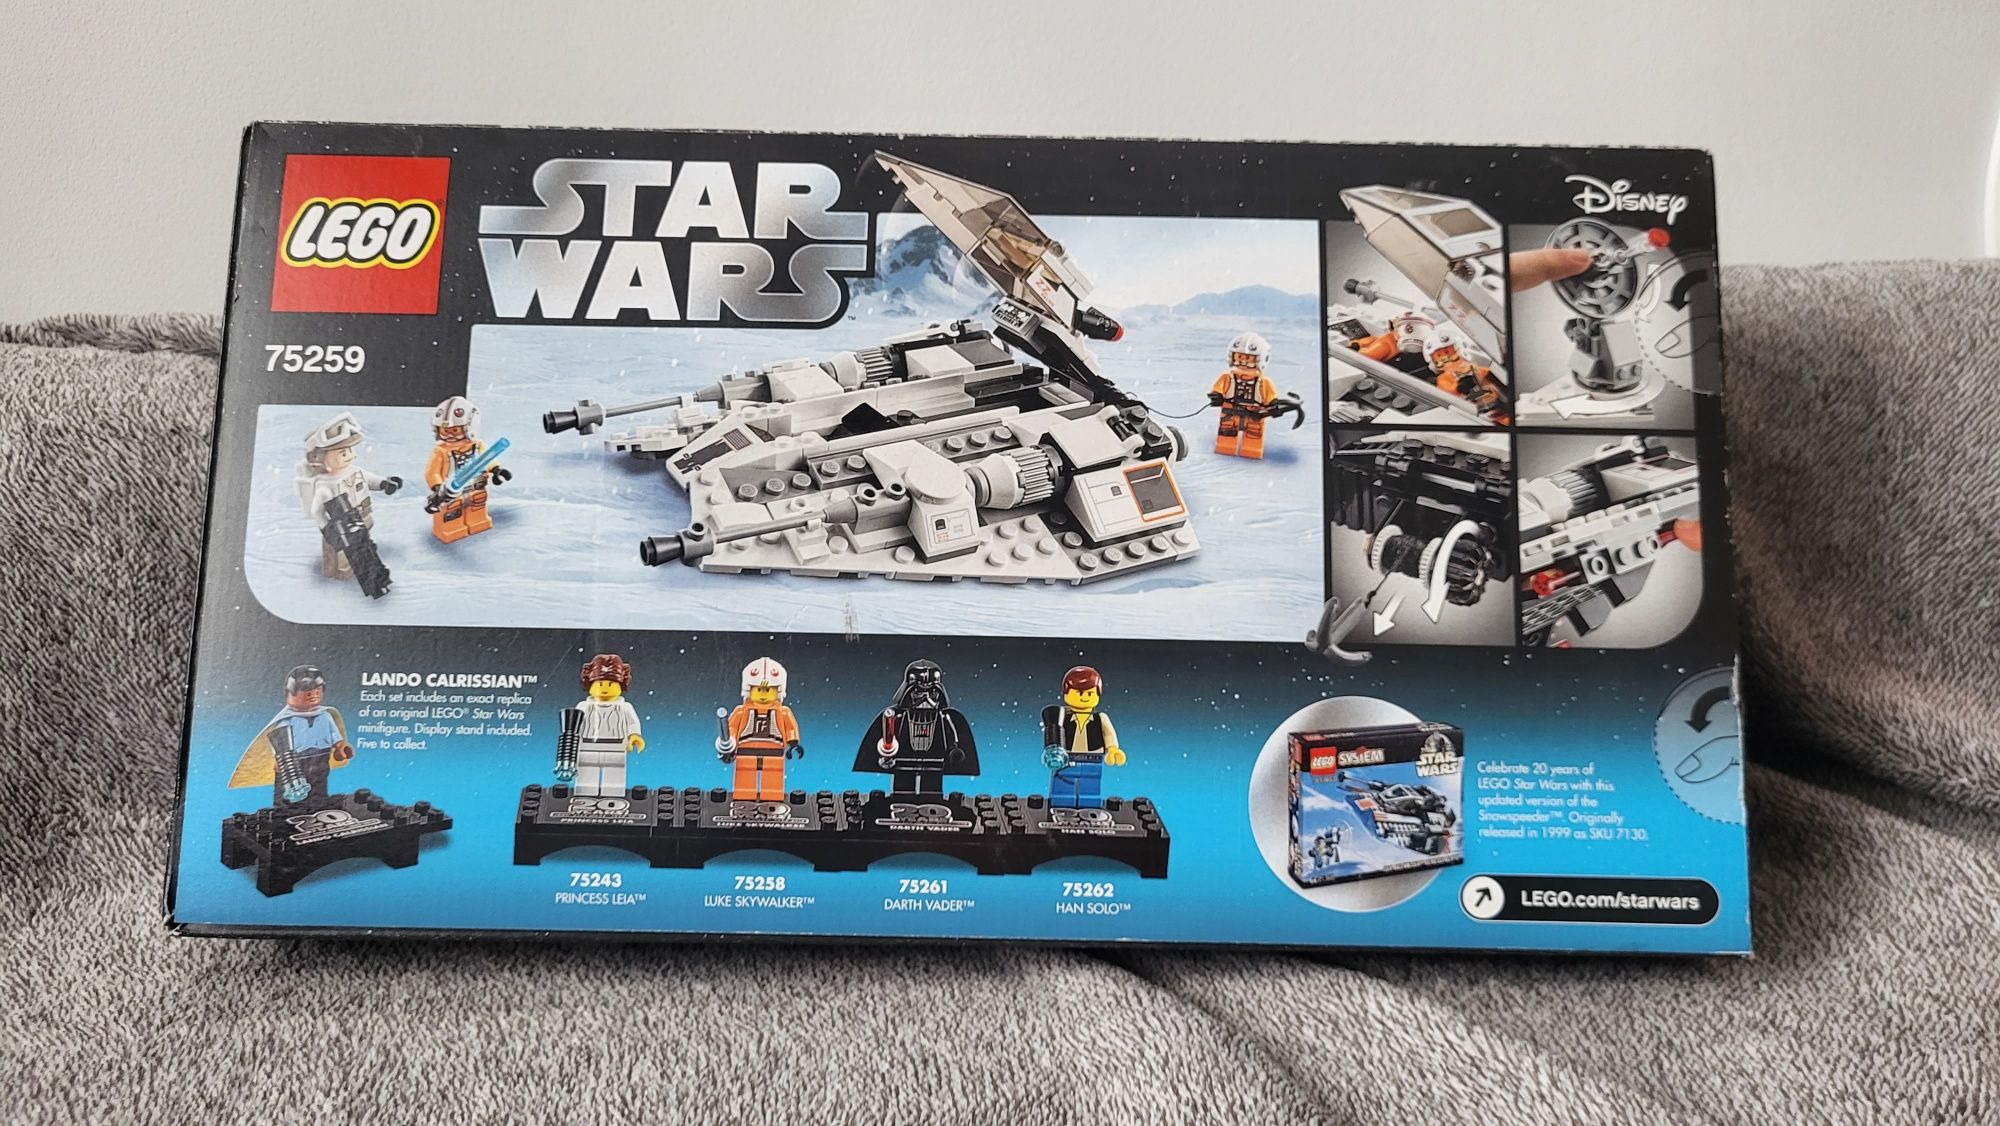 Lego star wars 75259 Snowspeeder - 20th Anniversary Edition